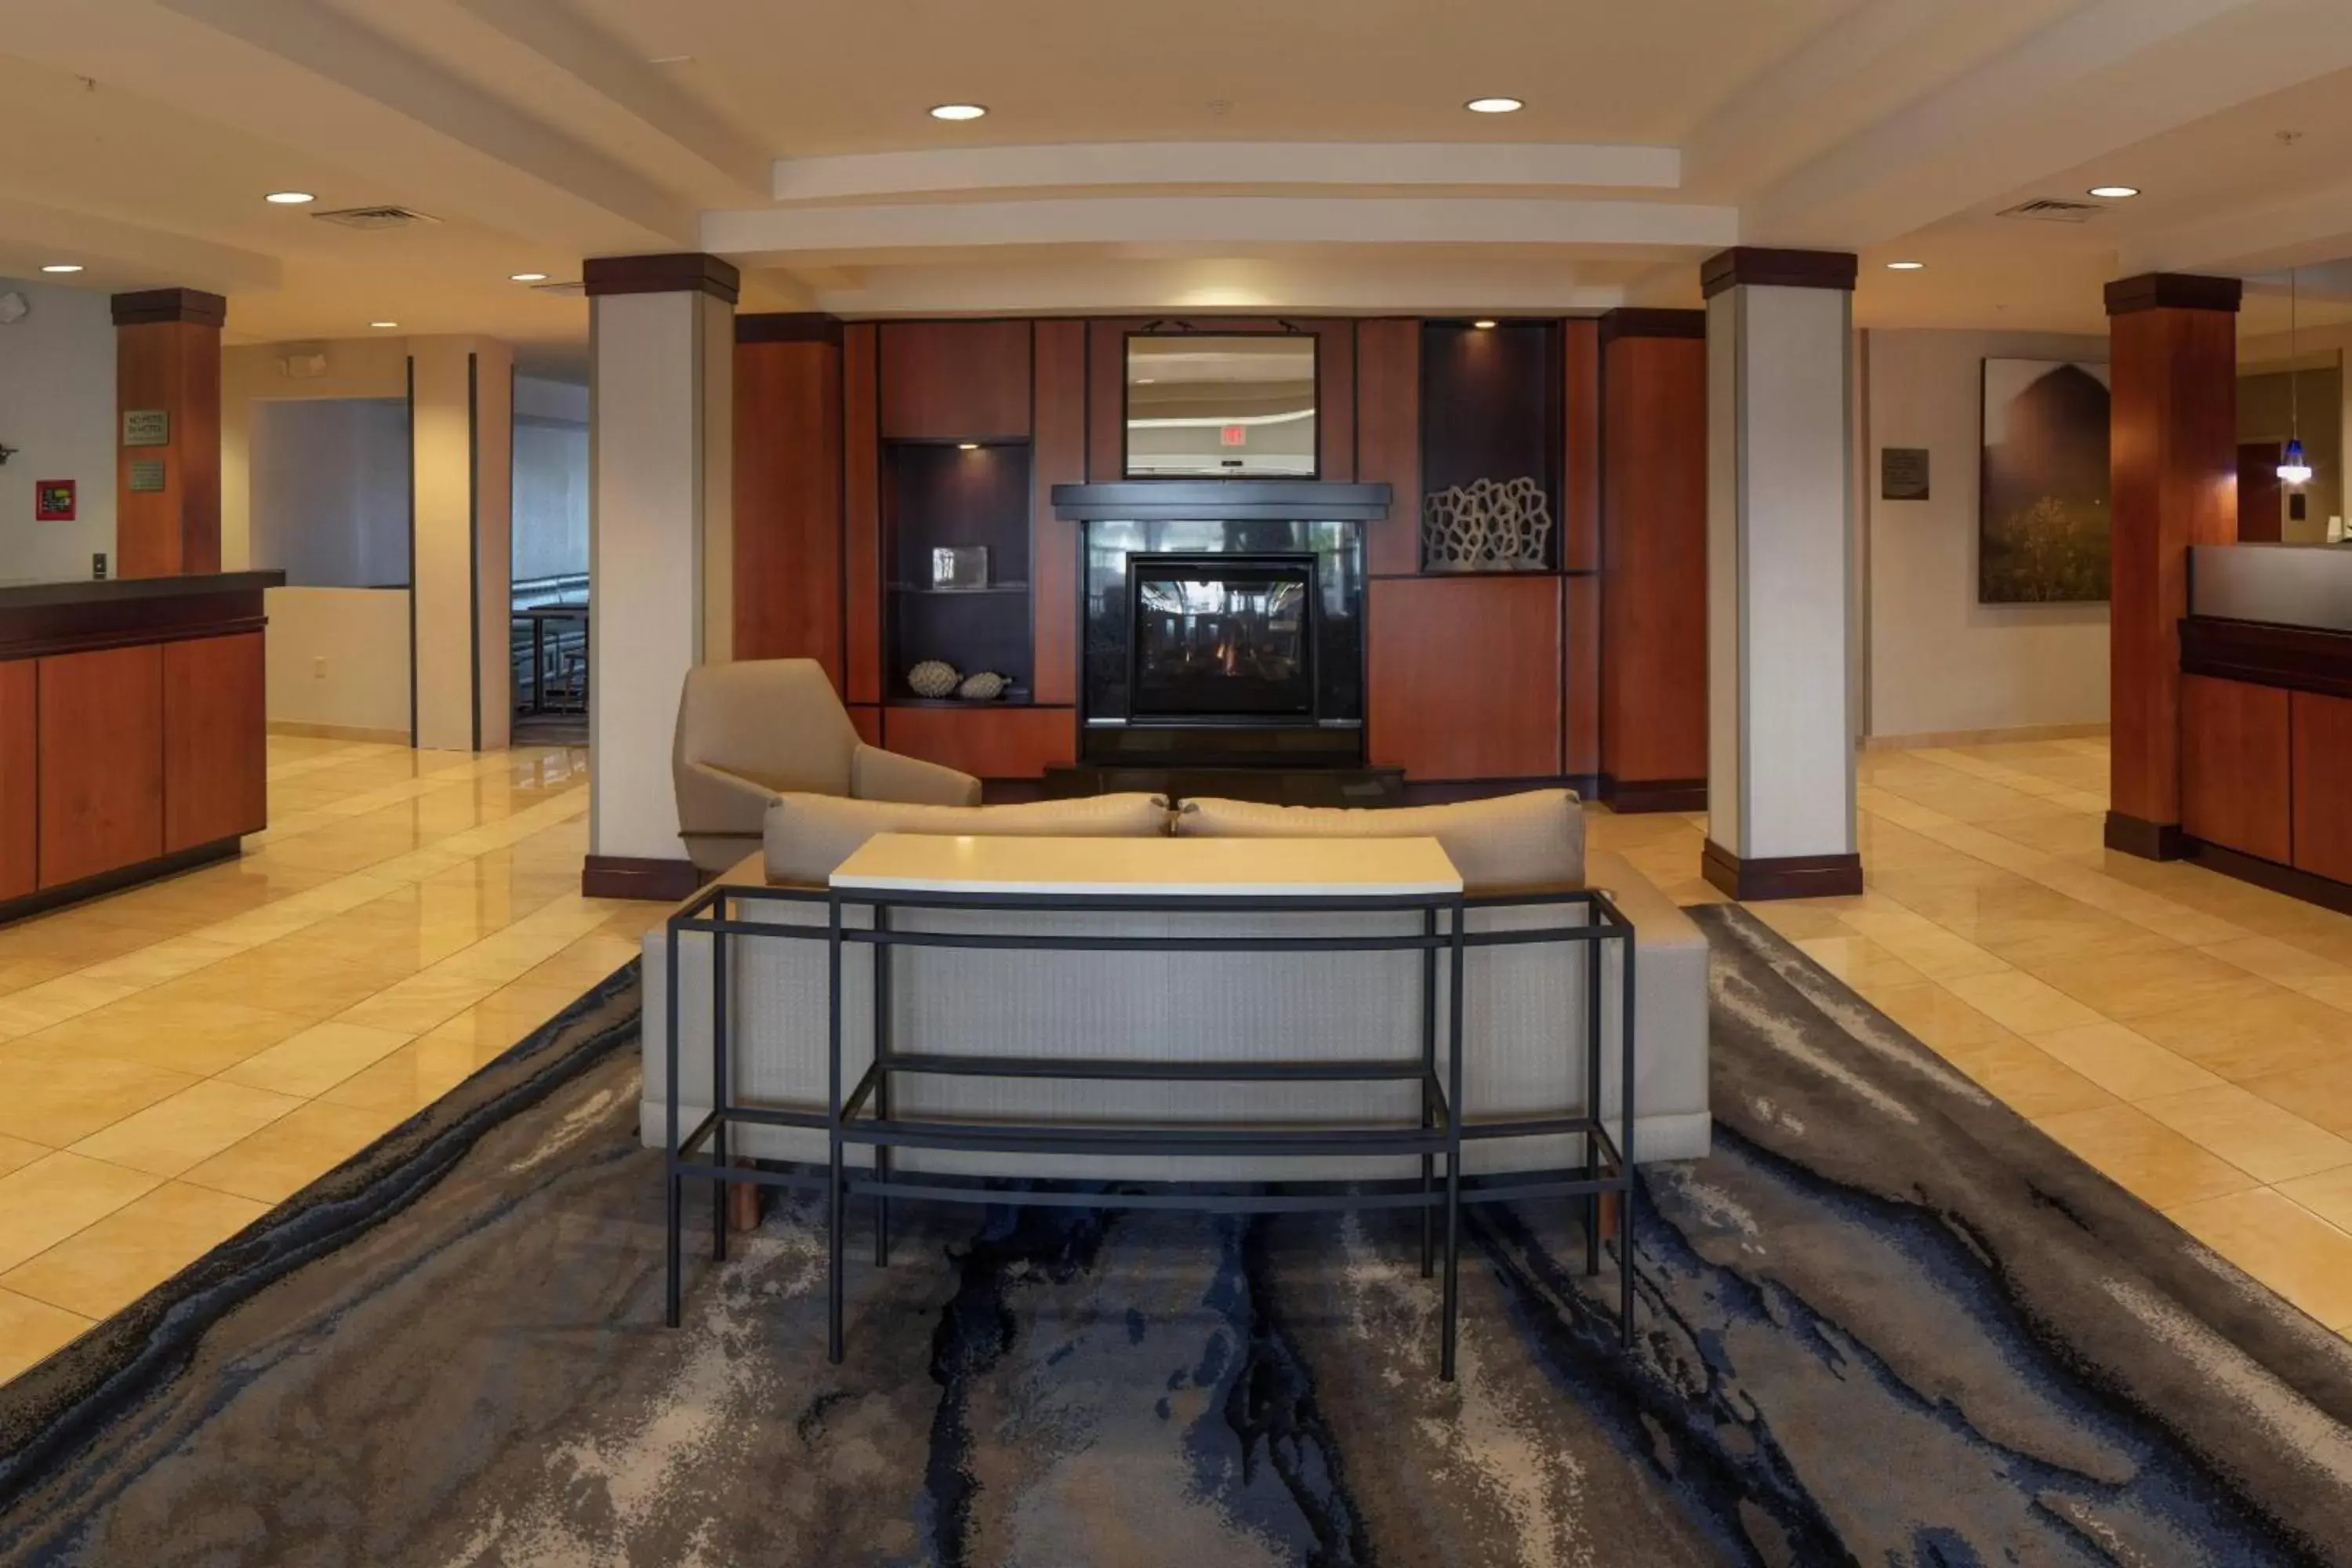 Lobby or reception, Lobby/Reception in Fairfield Inn & Suites by Marriott Venice